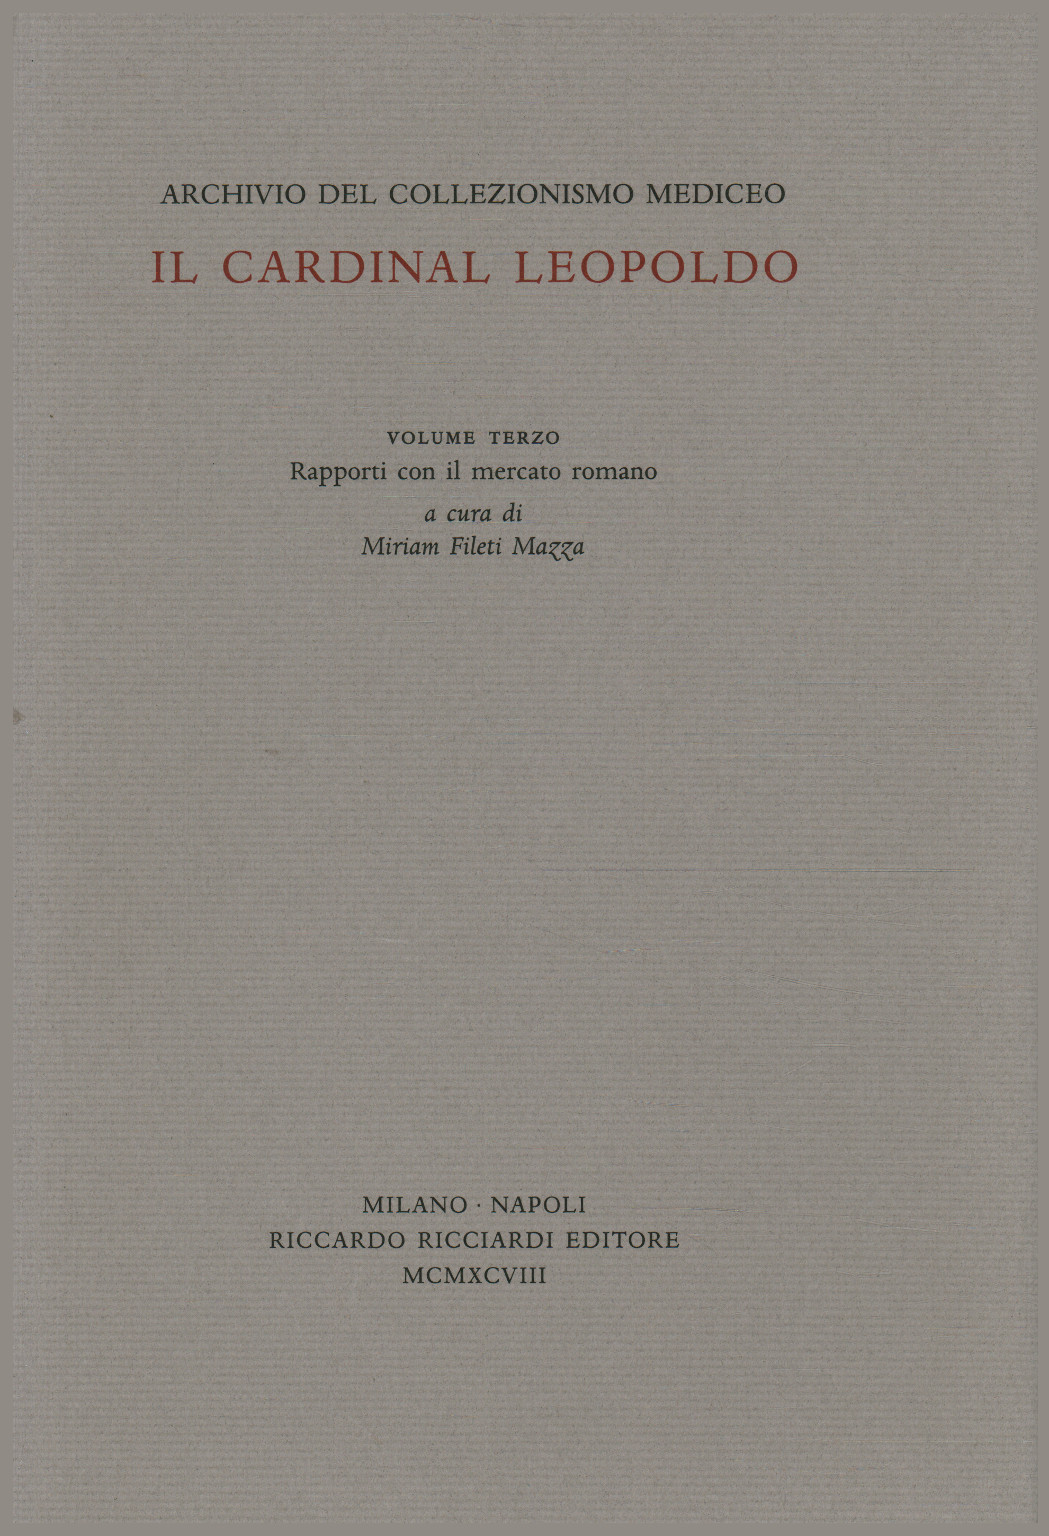 Il Cardinal Leopoldo. Volume terzo, Miriam Filetti Mazza